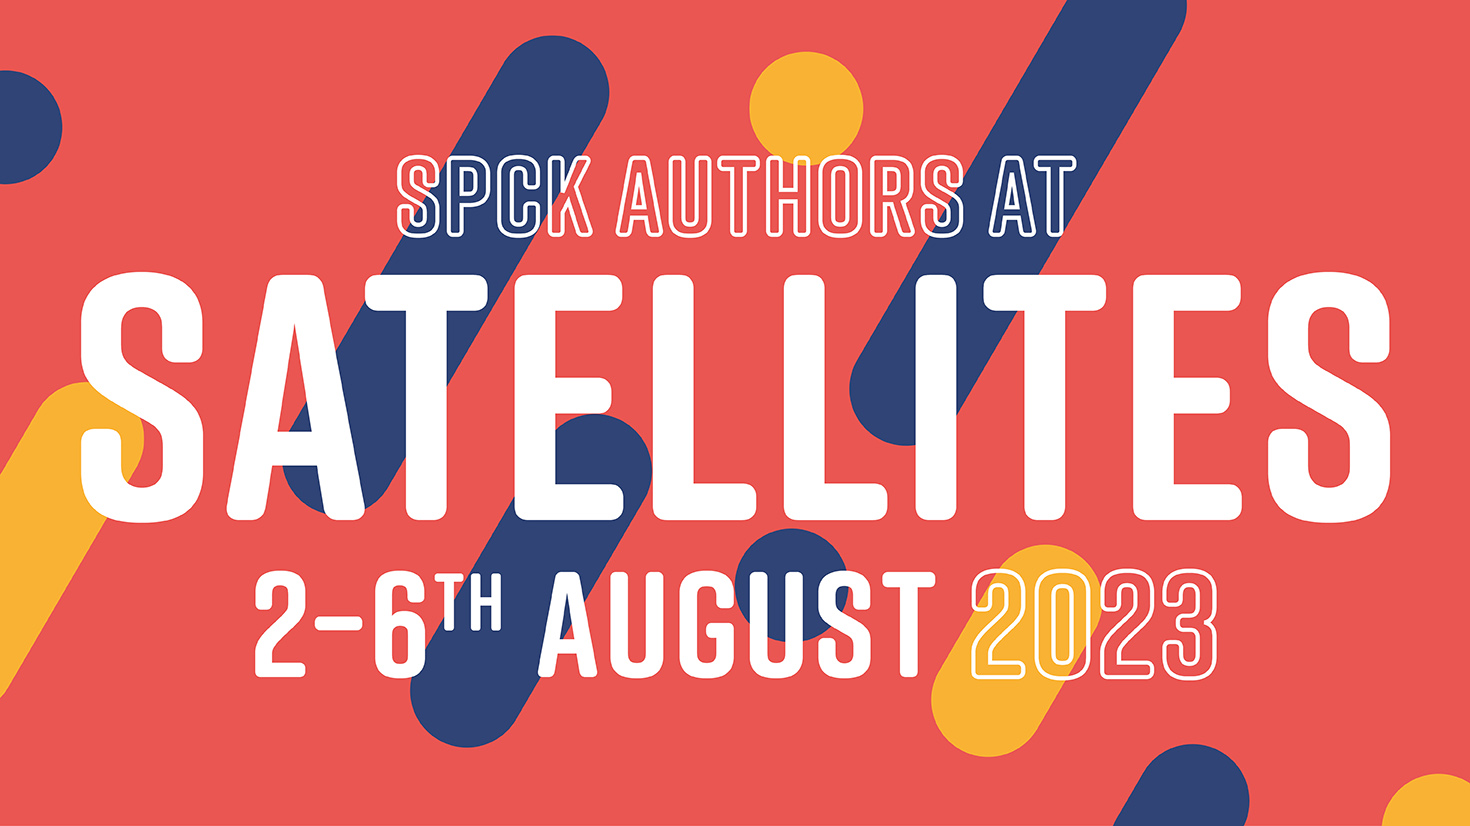 SPCK Authors at Satellites 